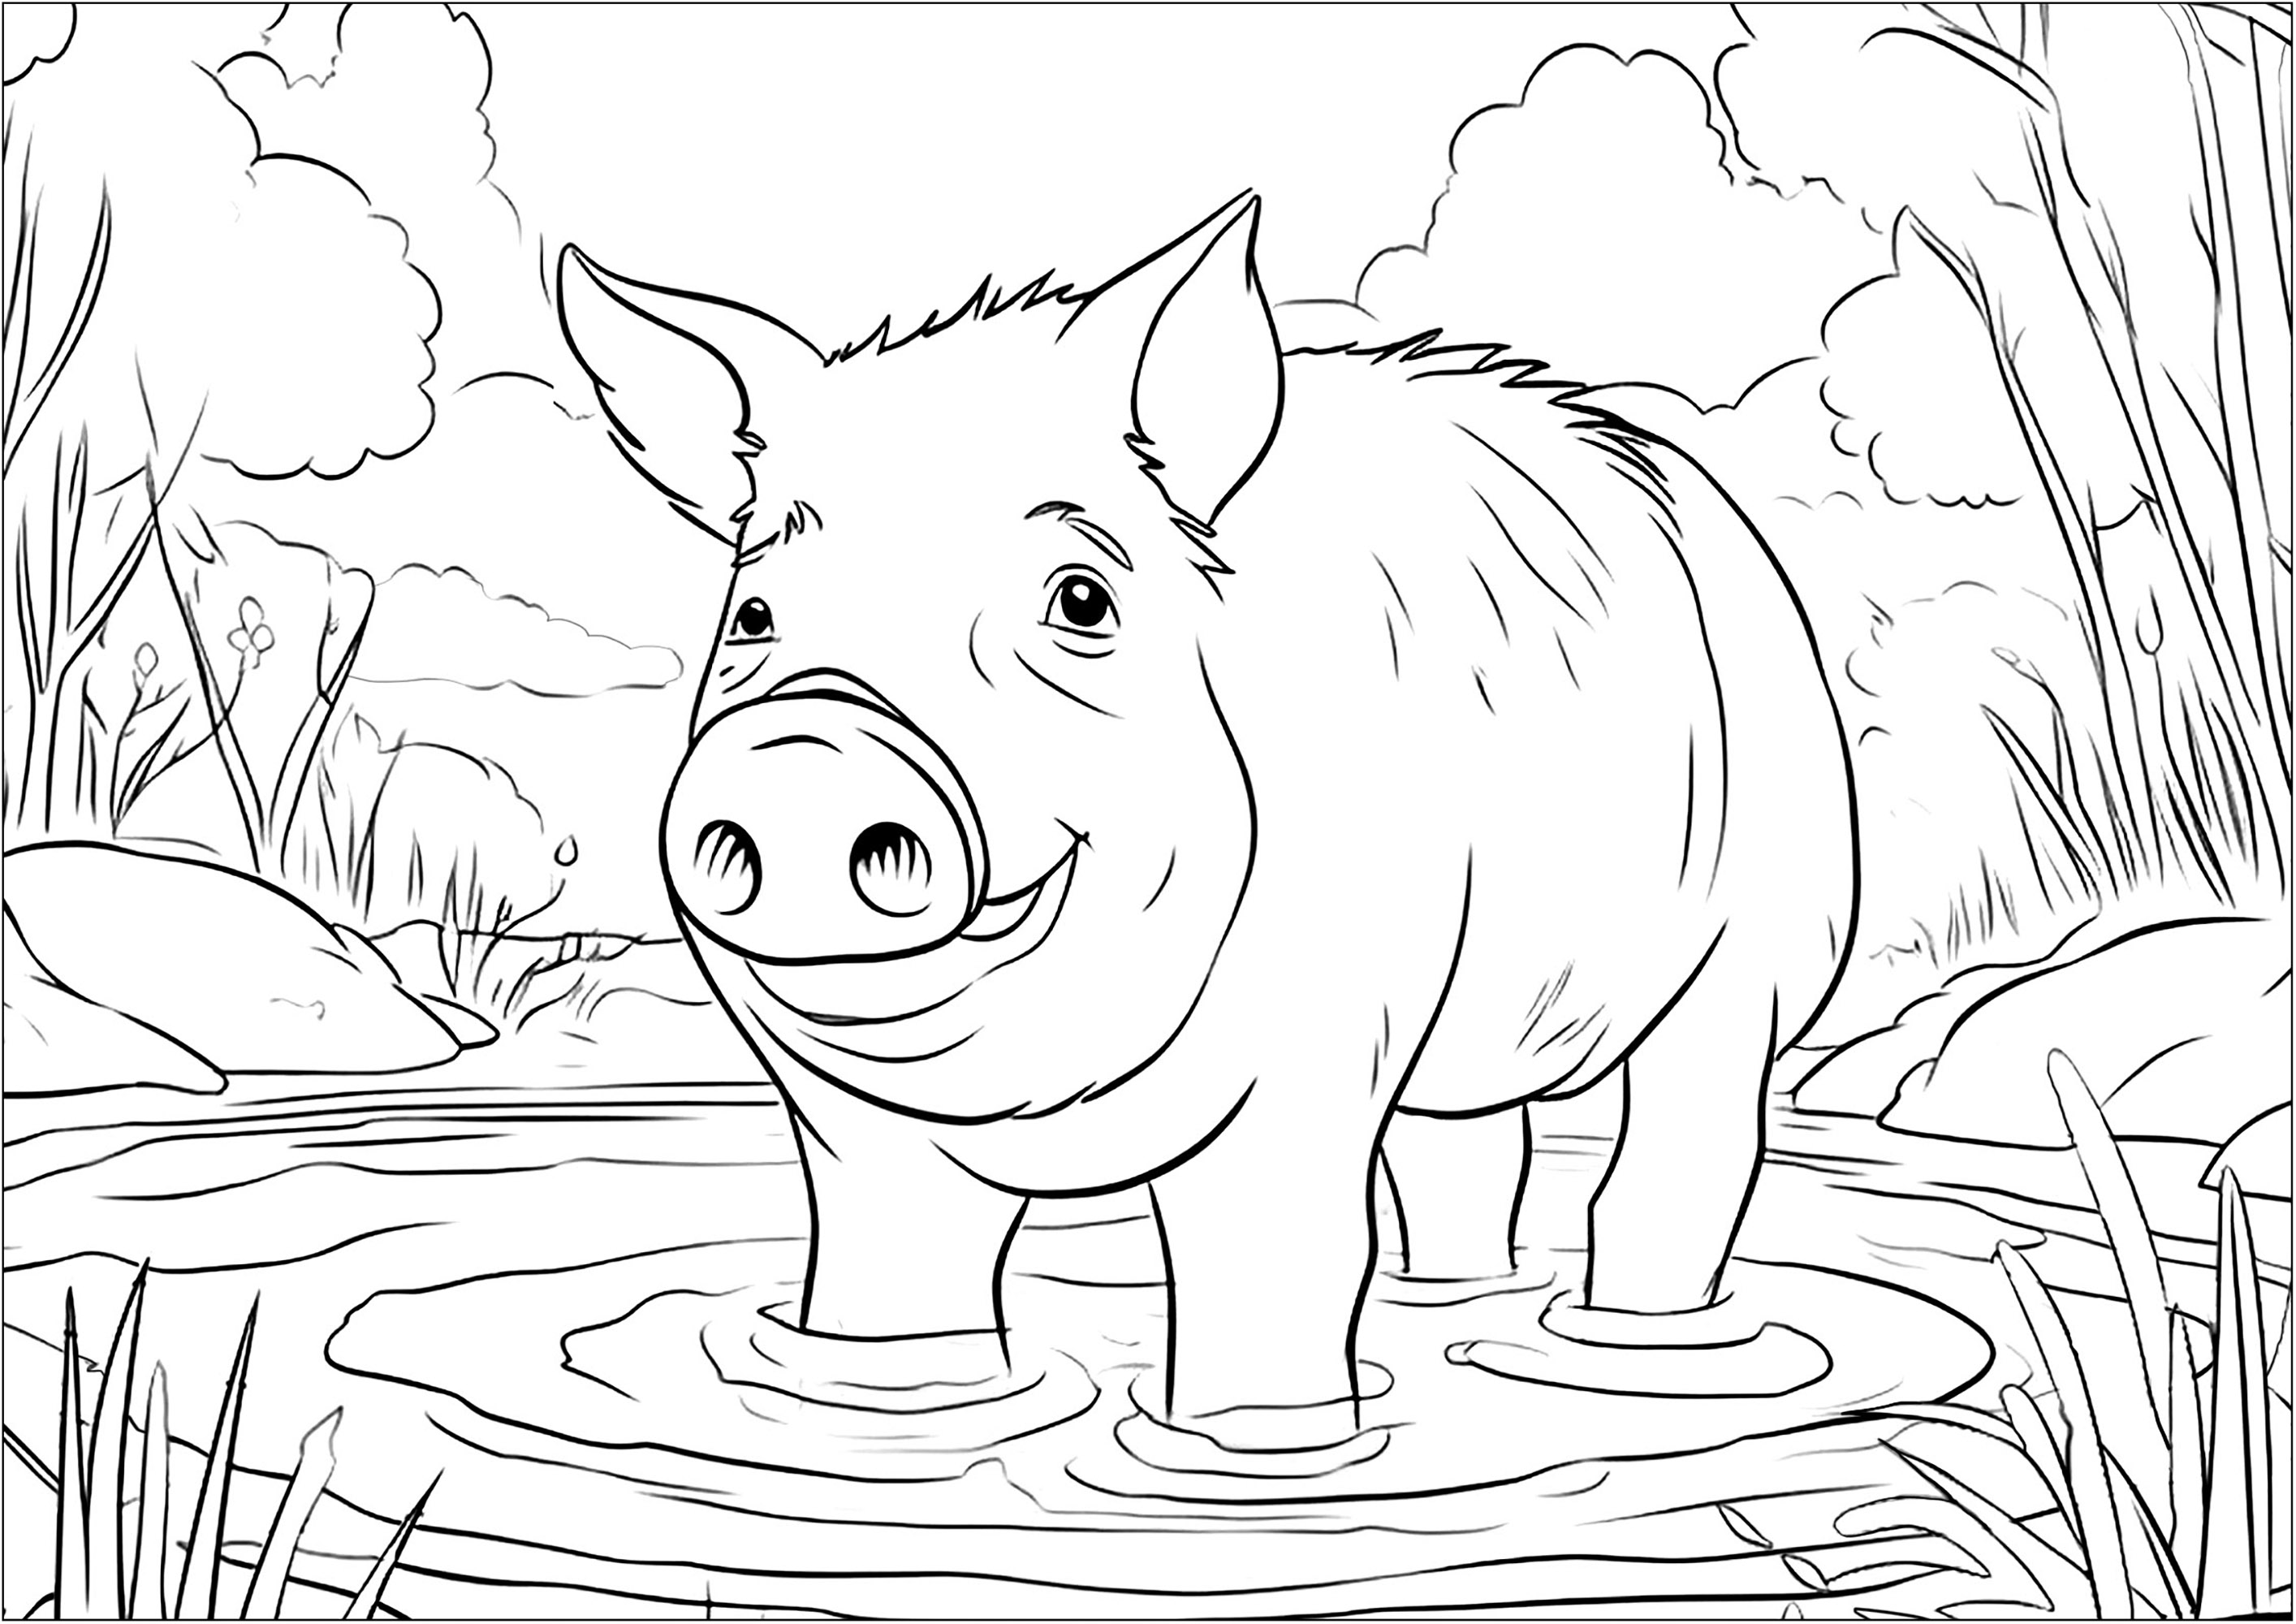 Cerdo bañándose en un charco de barro